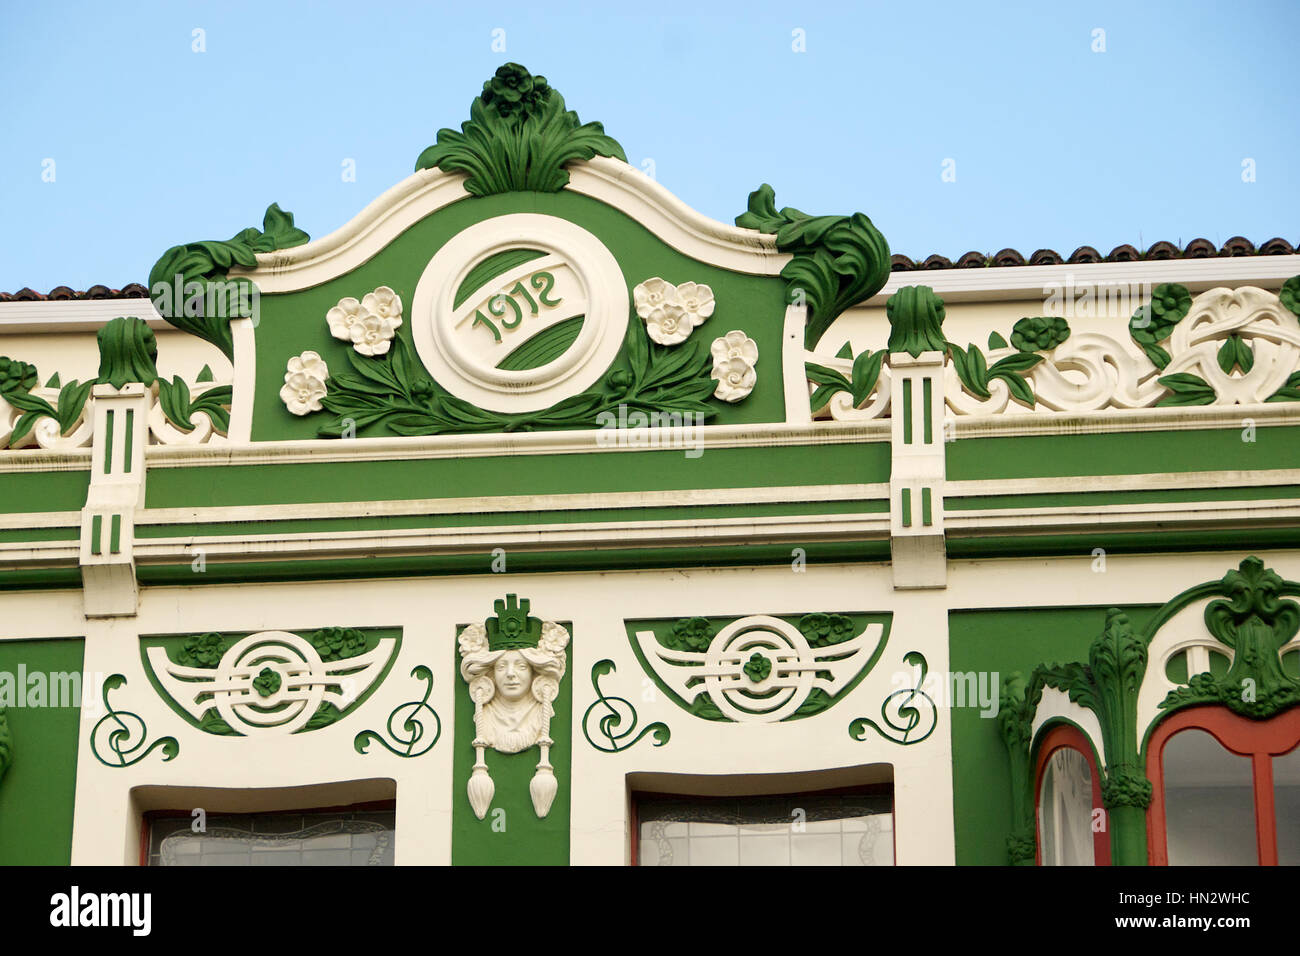 Colouful 1912 building in Cambre, A Coruna province, Galicia, Spain. Stock Photo